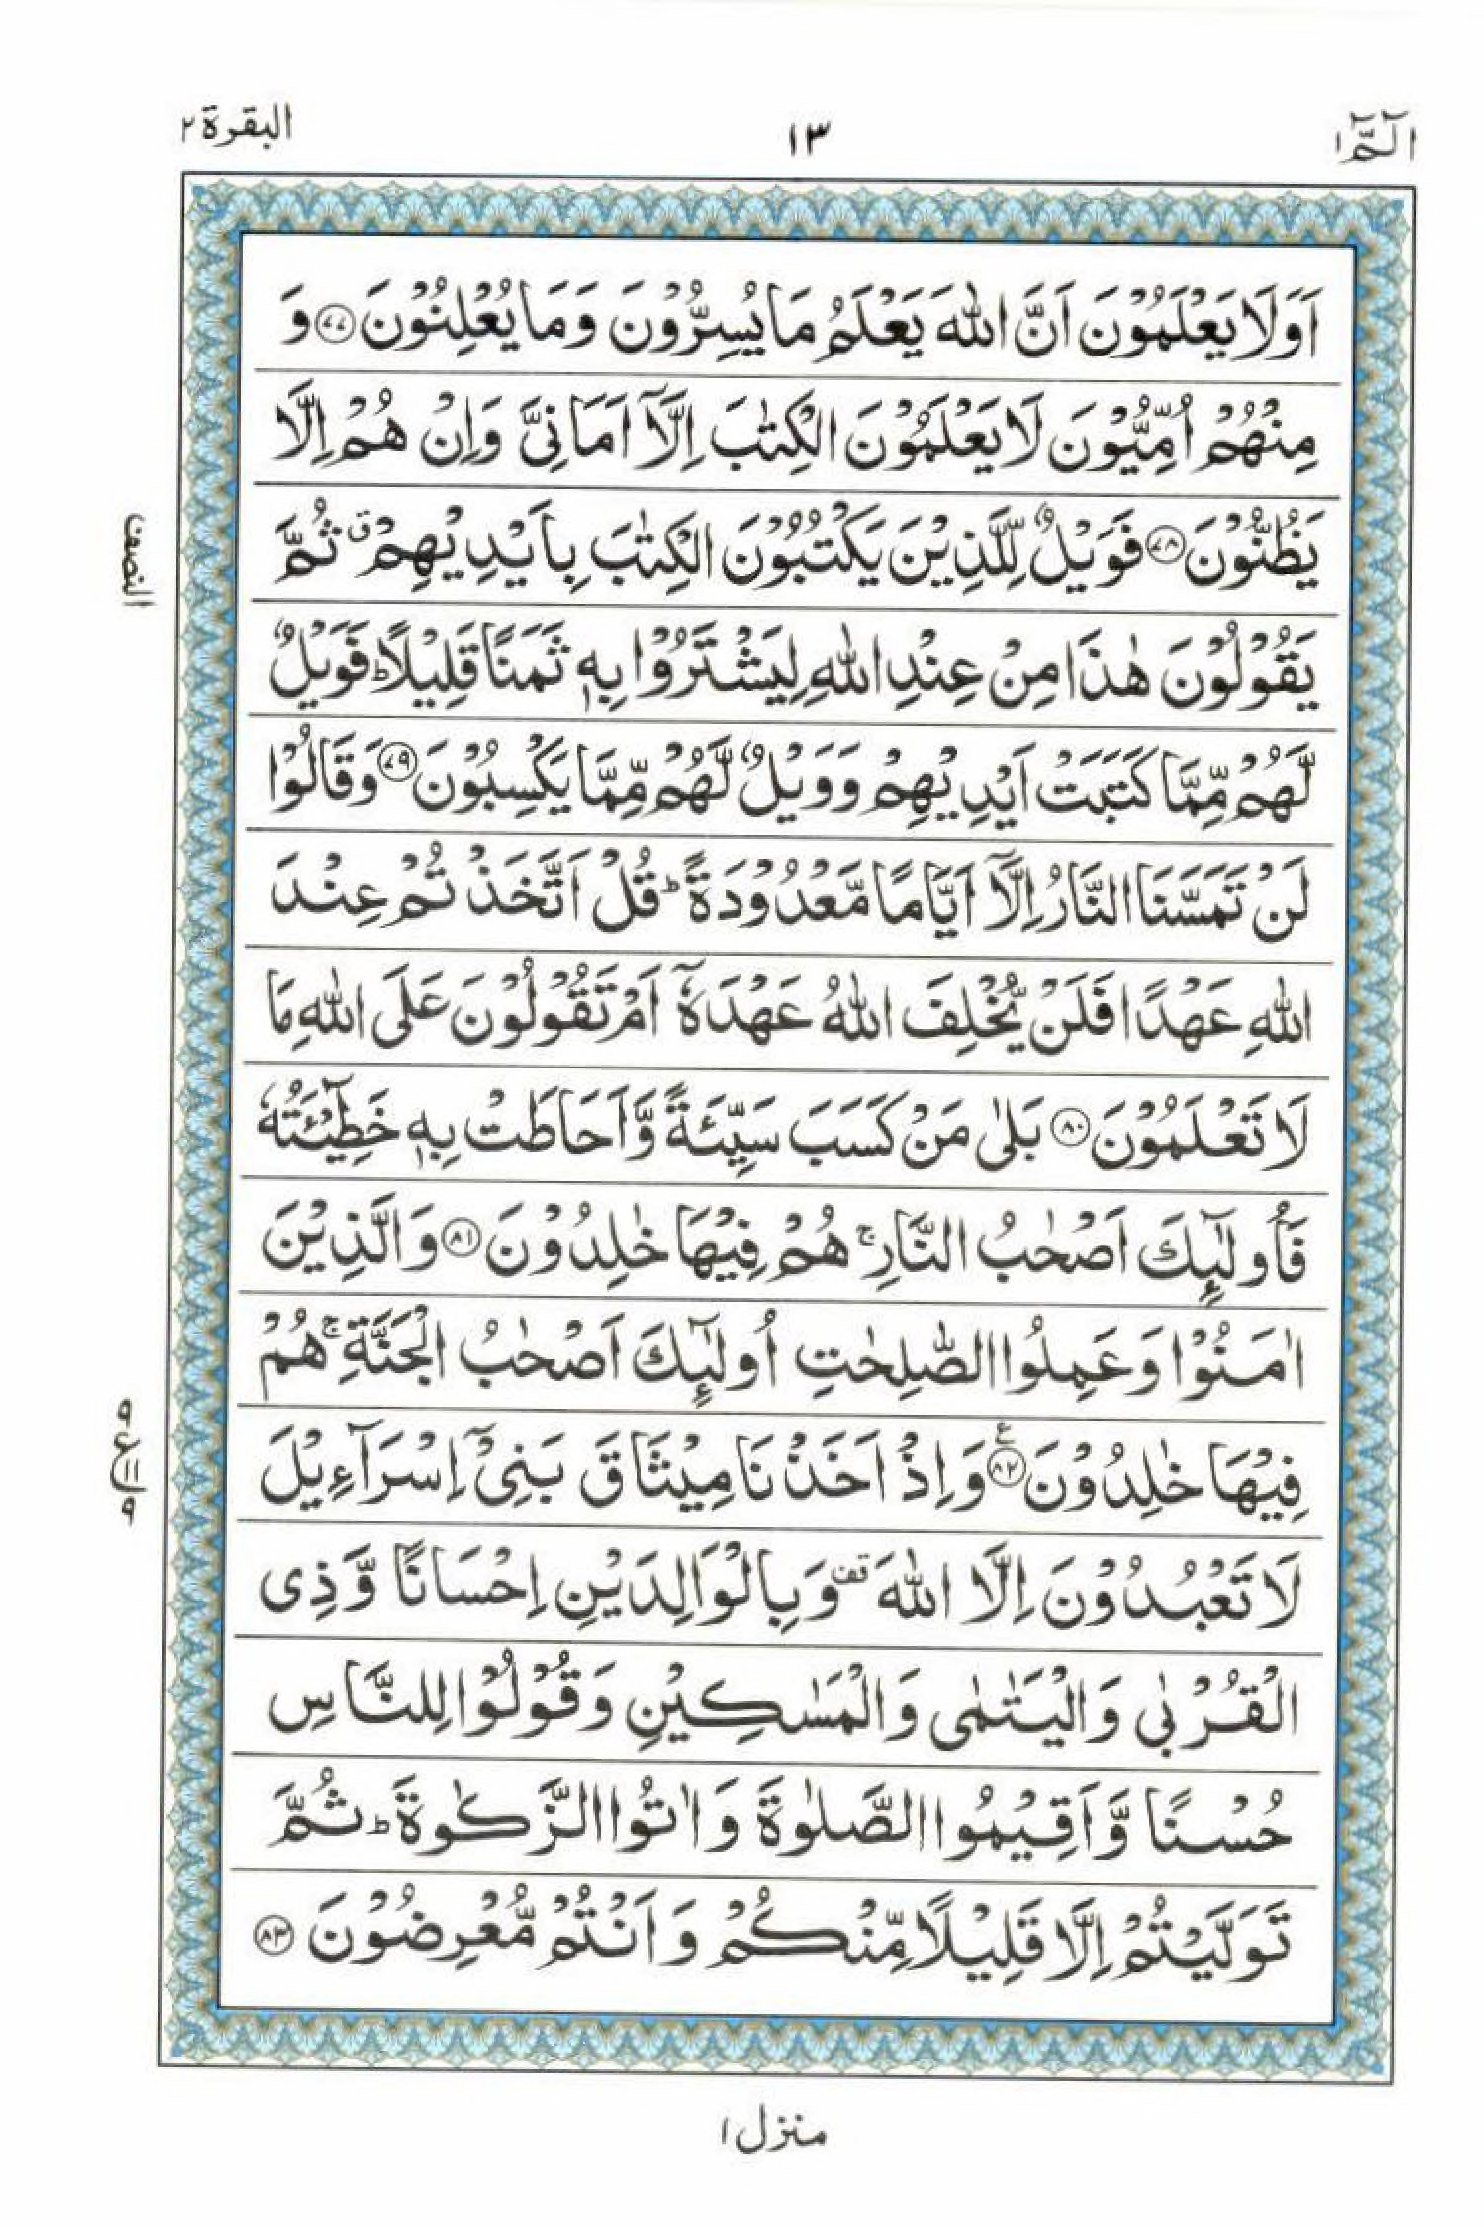 Read 15 Lines Al Quran Part 1 Page No 13, Practice Quran